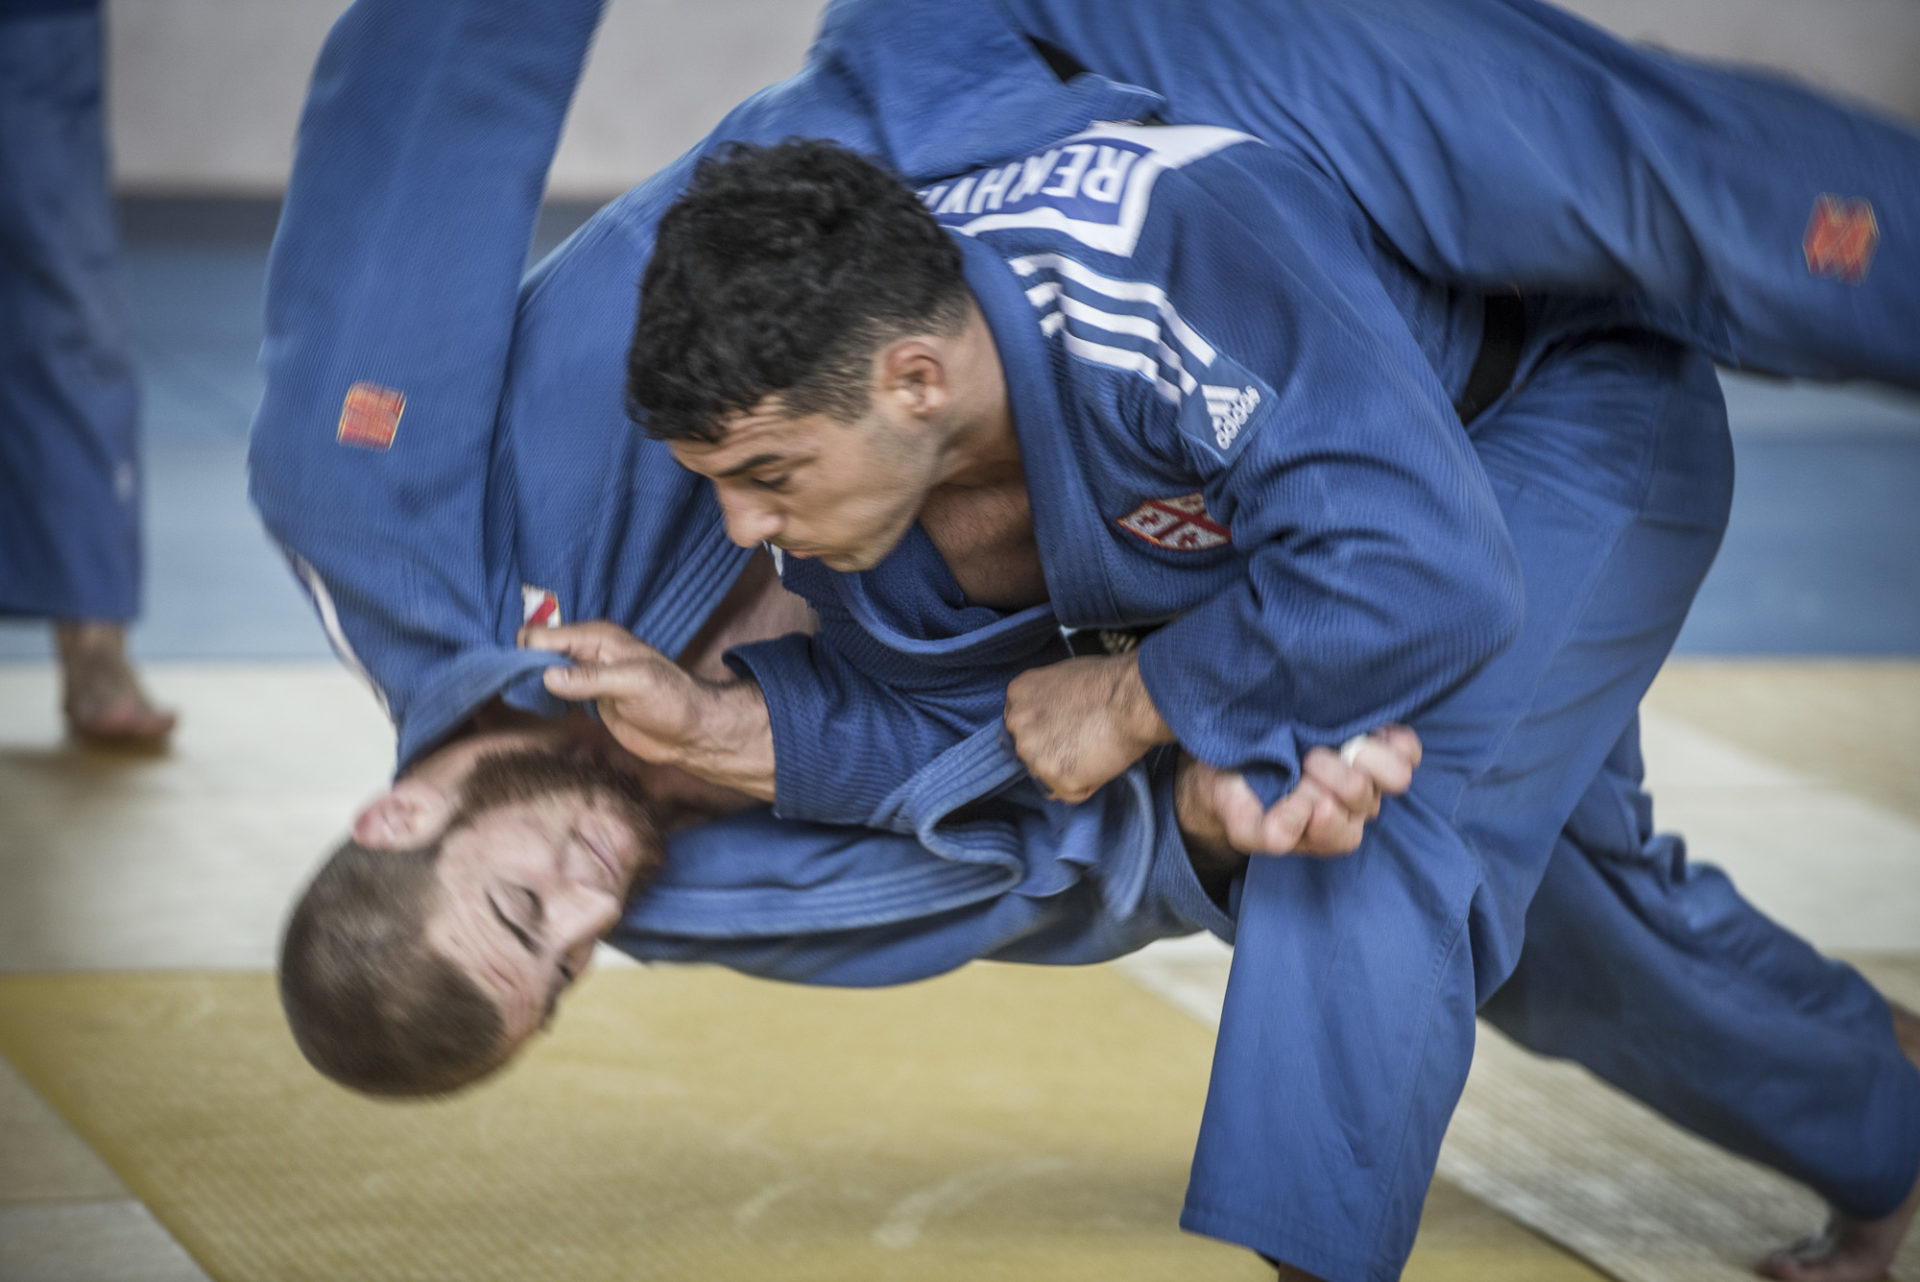 Passage de grade au judo